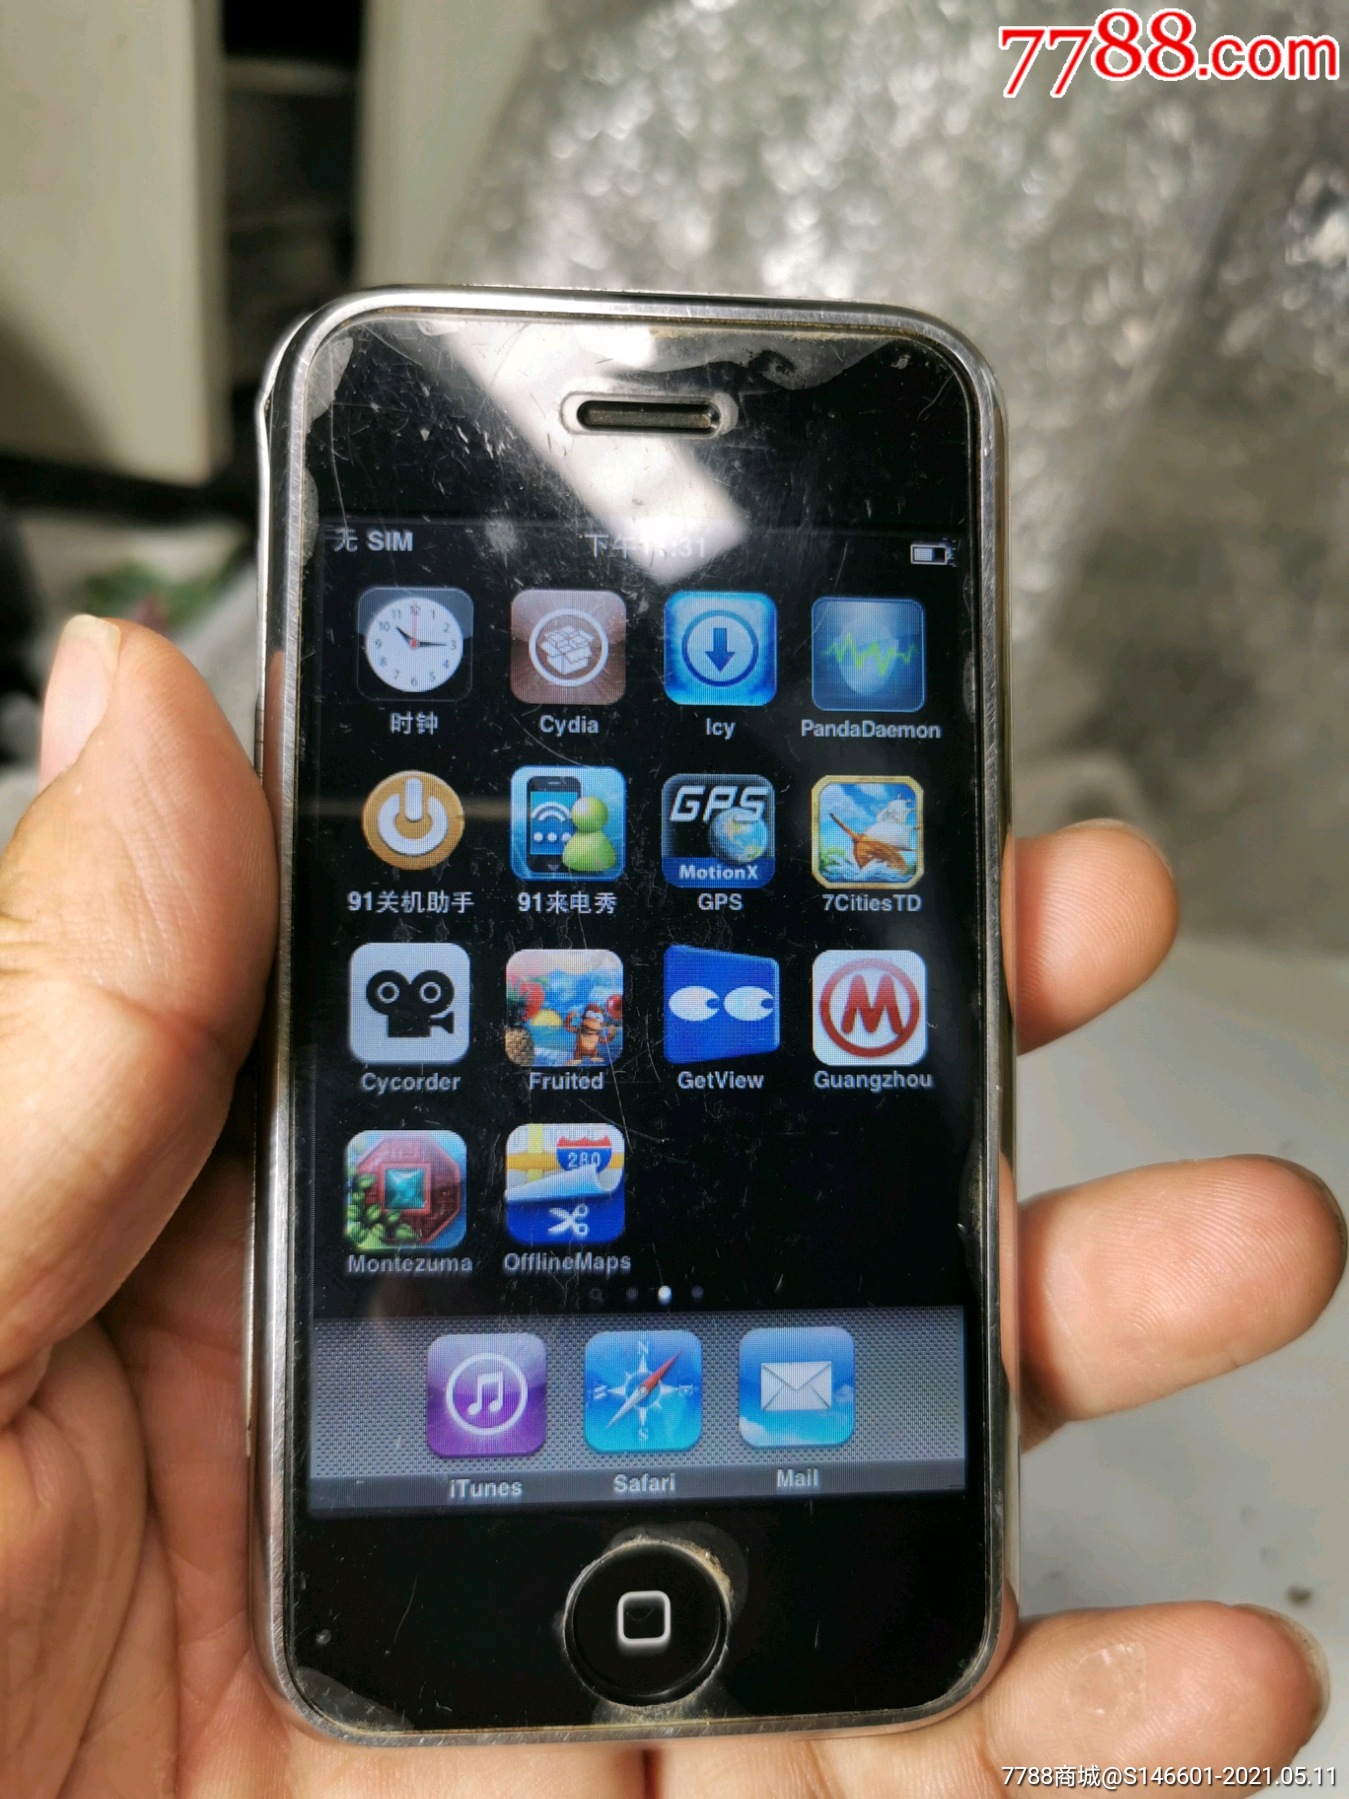 收藏精品苹果iphonea1203第*代苹果手机!功能正常!